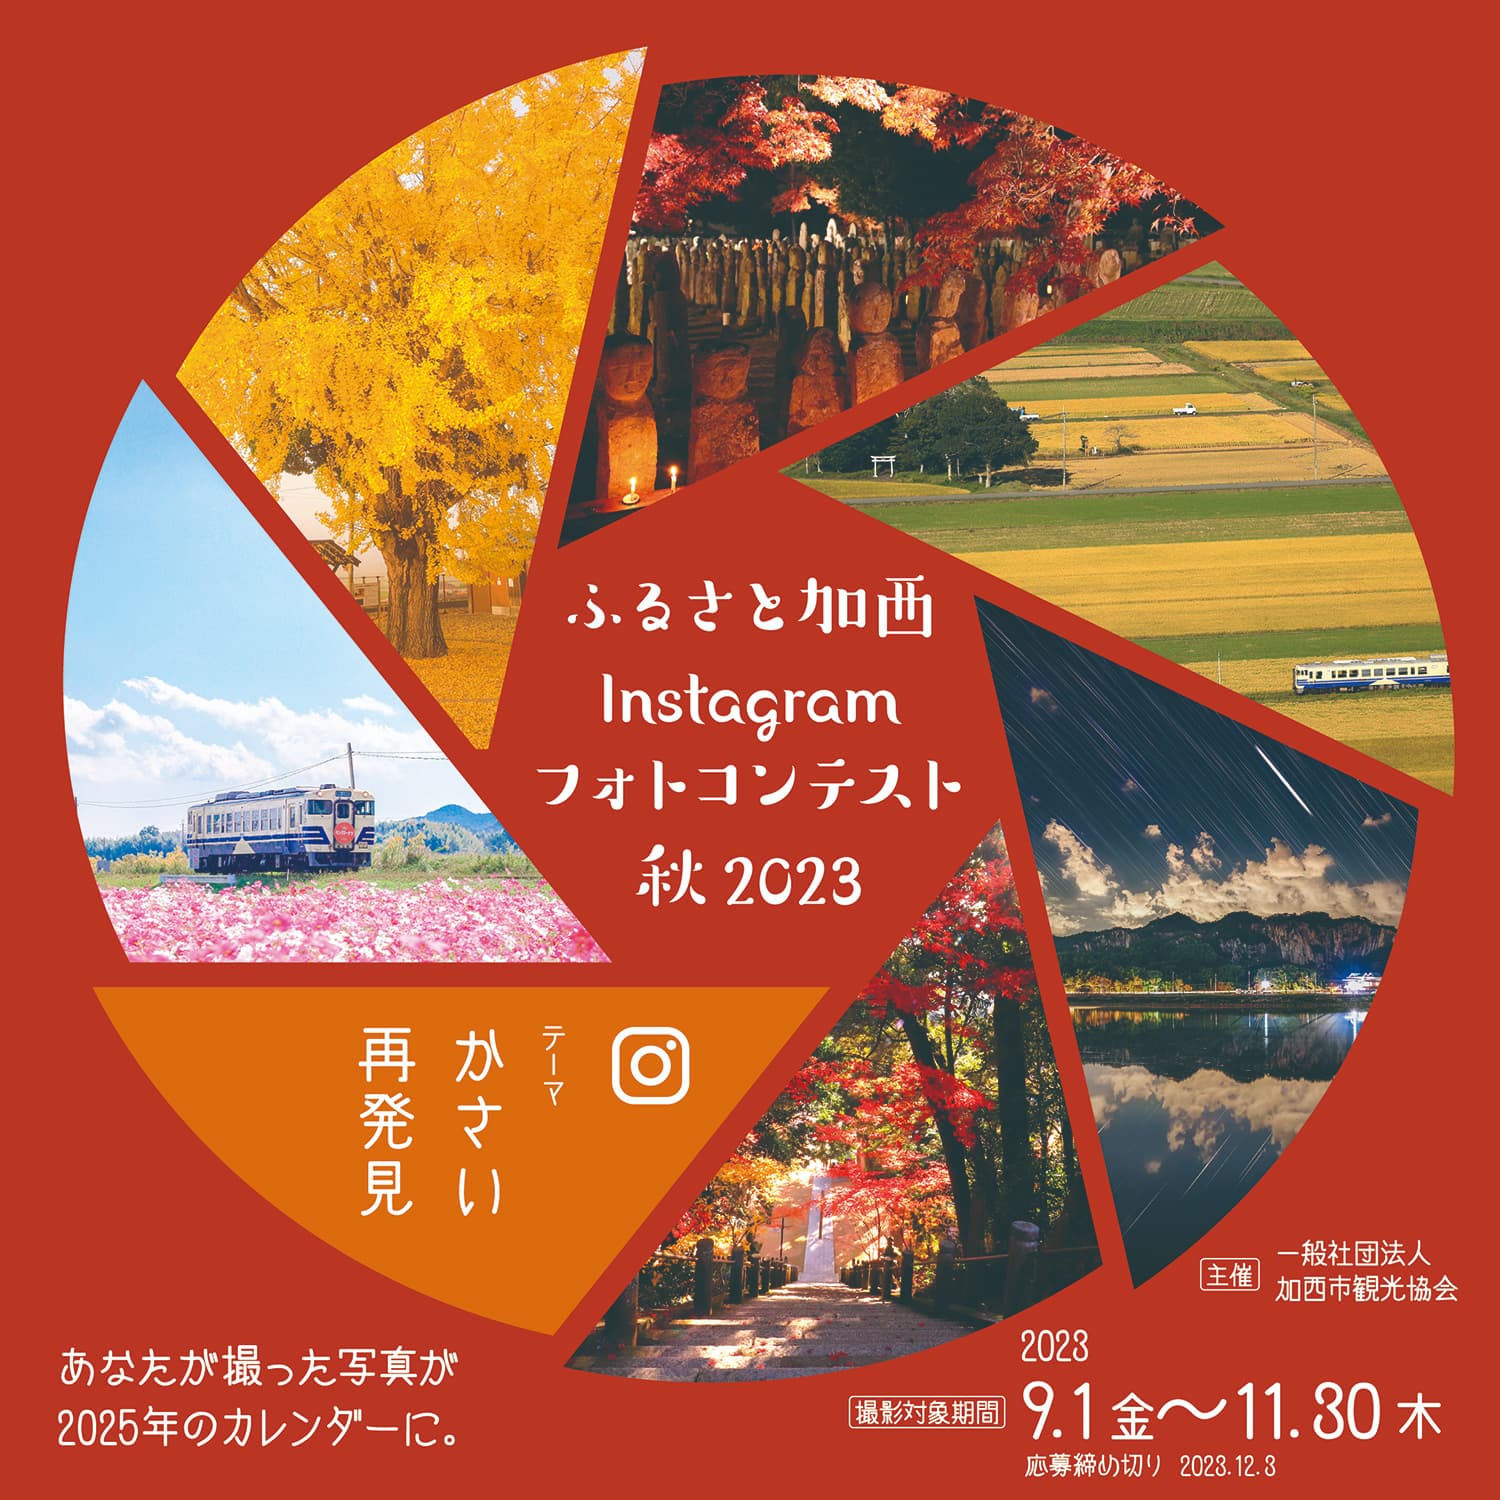 ふるさと加西Instagramフォトコンテスト秋2023